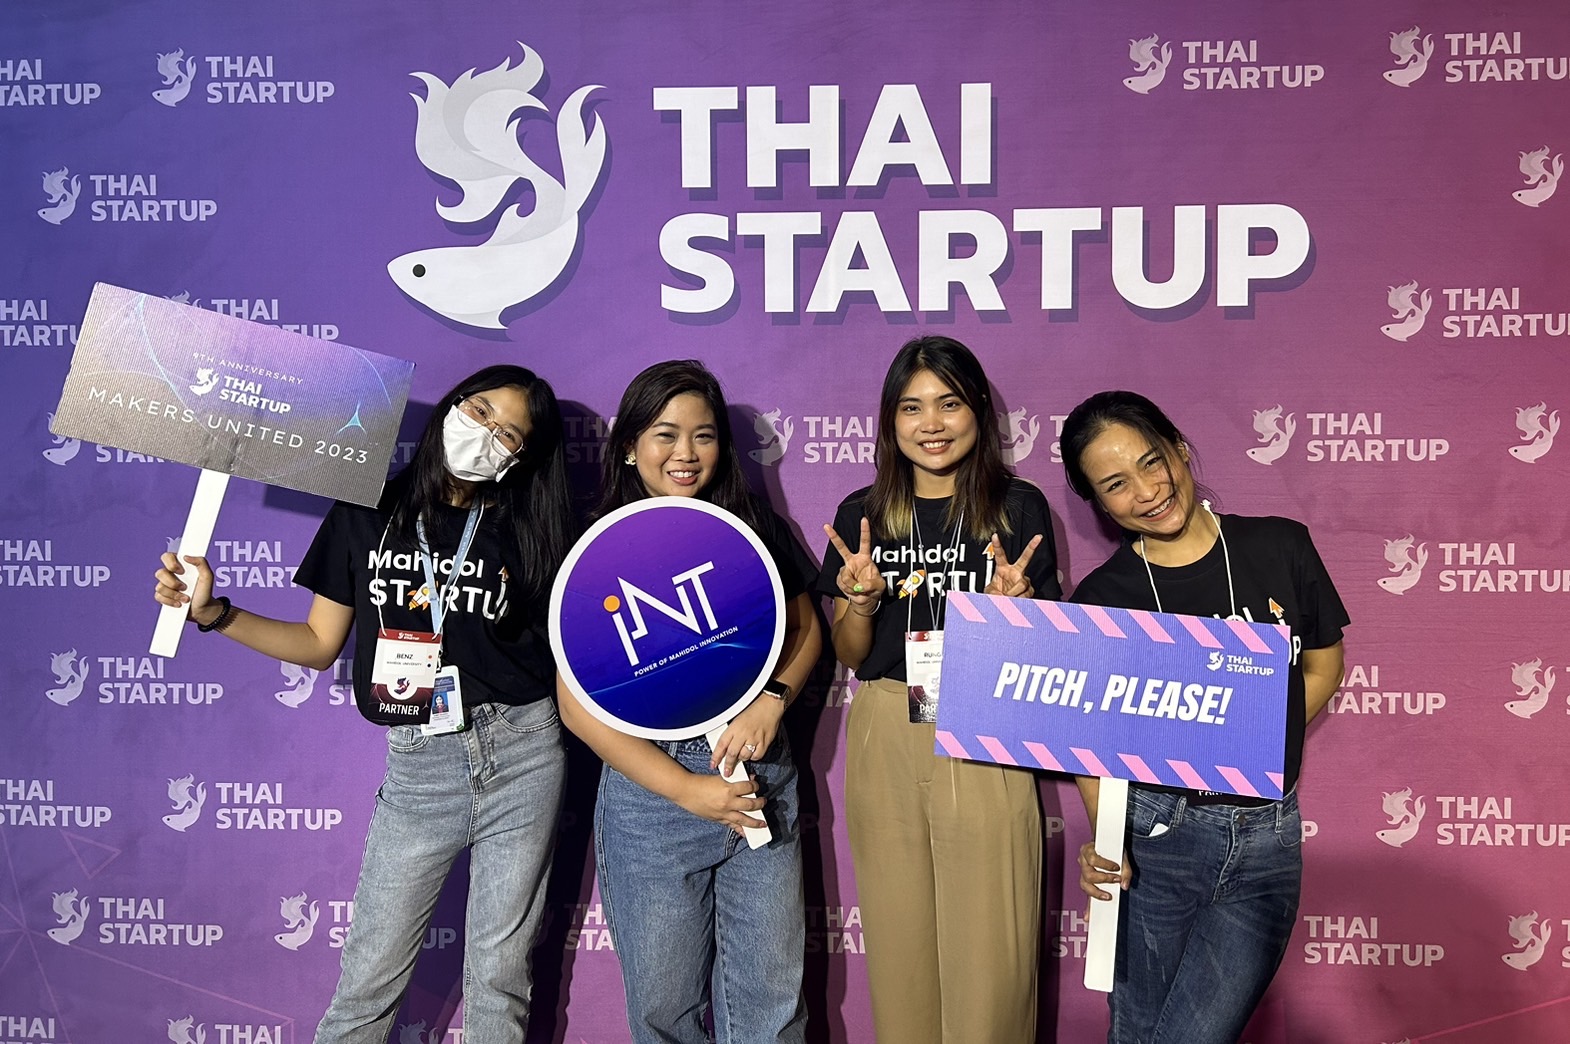 สถาบันบริหารจัดการเทคโนโลยีและนวัตกรรม (iNT) มหาวิทยาลัยมหิดล ร่วมจัดงาน "Makers United 2023 by Thai Startup" โดยสมาคม Thai Startup เพื่อรวมกลุ่มสตาร์ทอัพในประเทศไทย และหุ้นส่วนพันธมิตรที่เกี่ยวข้องจากทางภาครัฐและเอกชน ณ เมเจอร์ ซีนีเพล็กซ์ รัชโยธิน โดยมีเจ้าหน้าที่ งานระบบนิเวศผู้ประกอบการ เป็นตัวแทนและผู้ร่วมจัดงาน